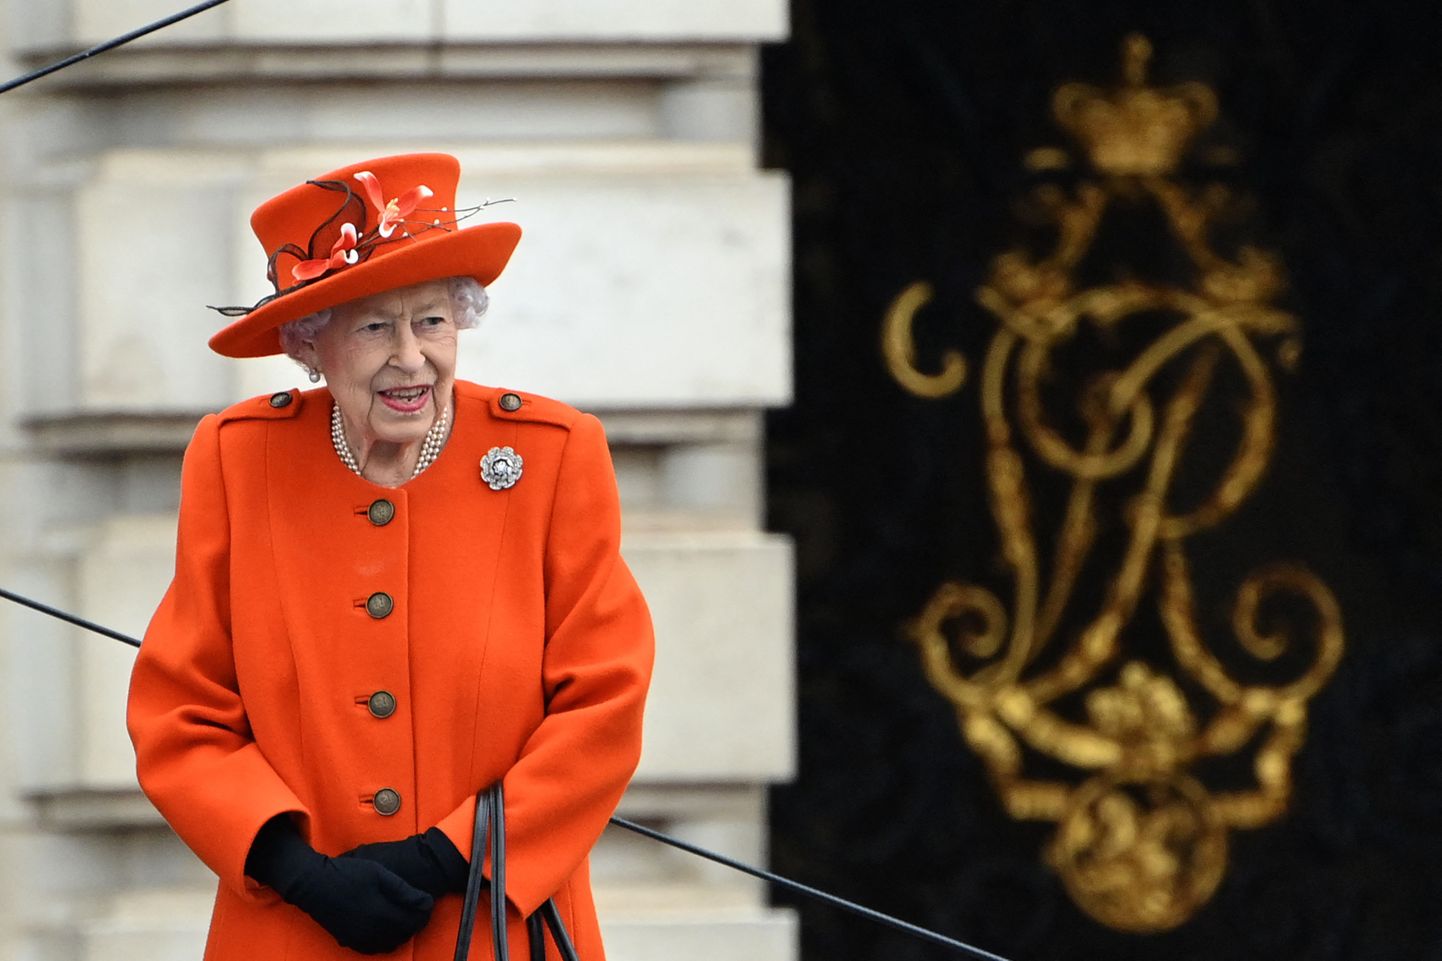 Kuninganna Elizabeth II seismas koduse Buckinghami palee eesõues.